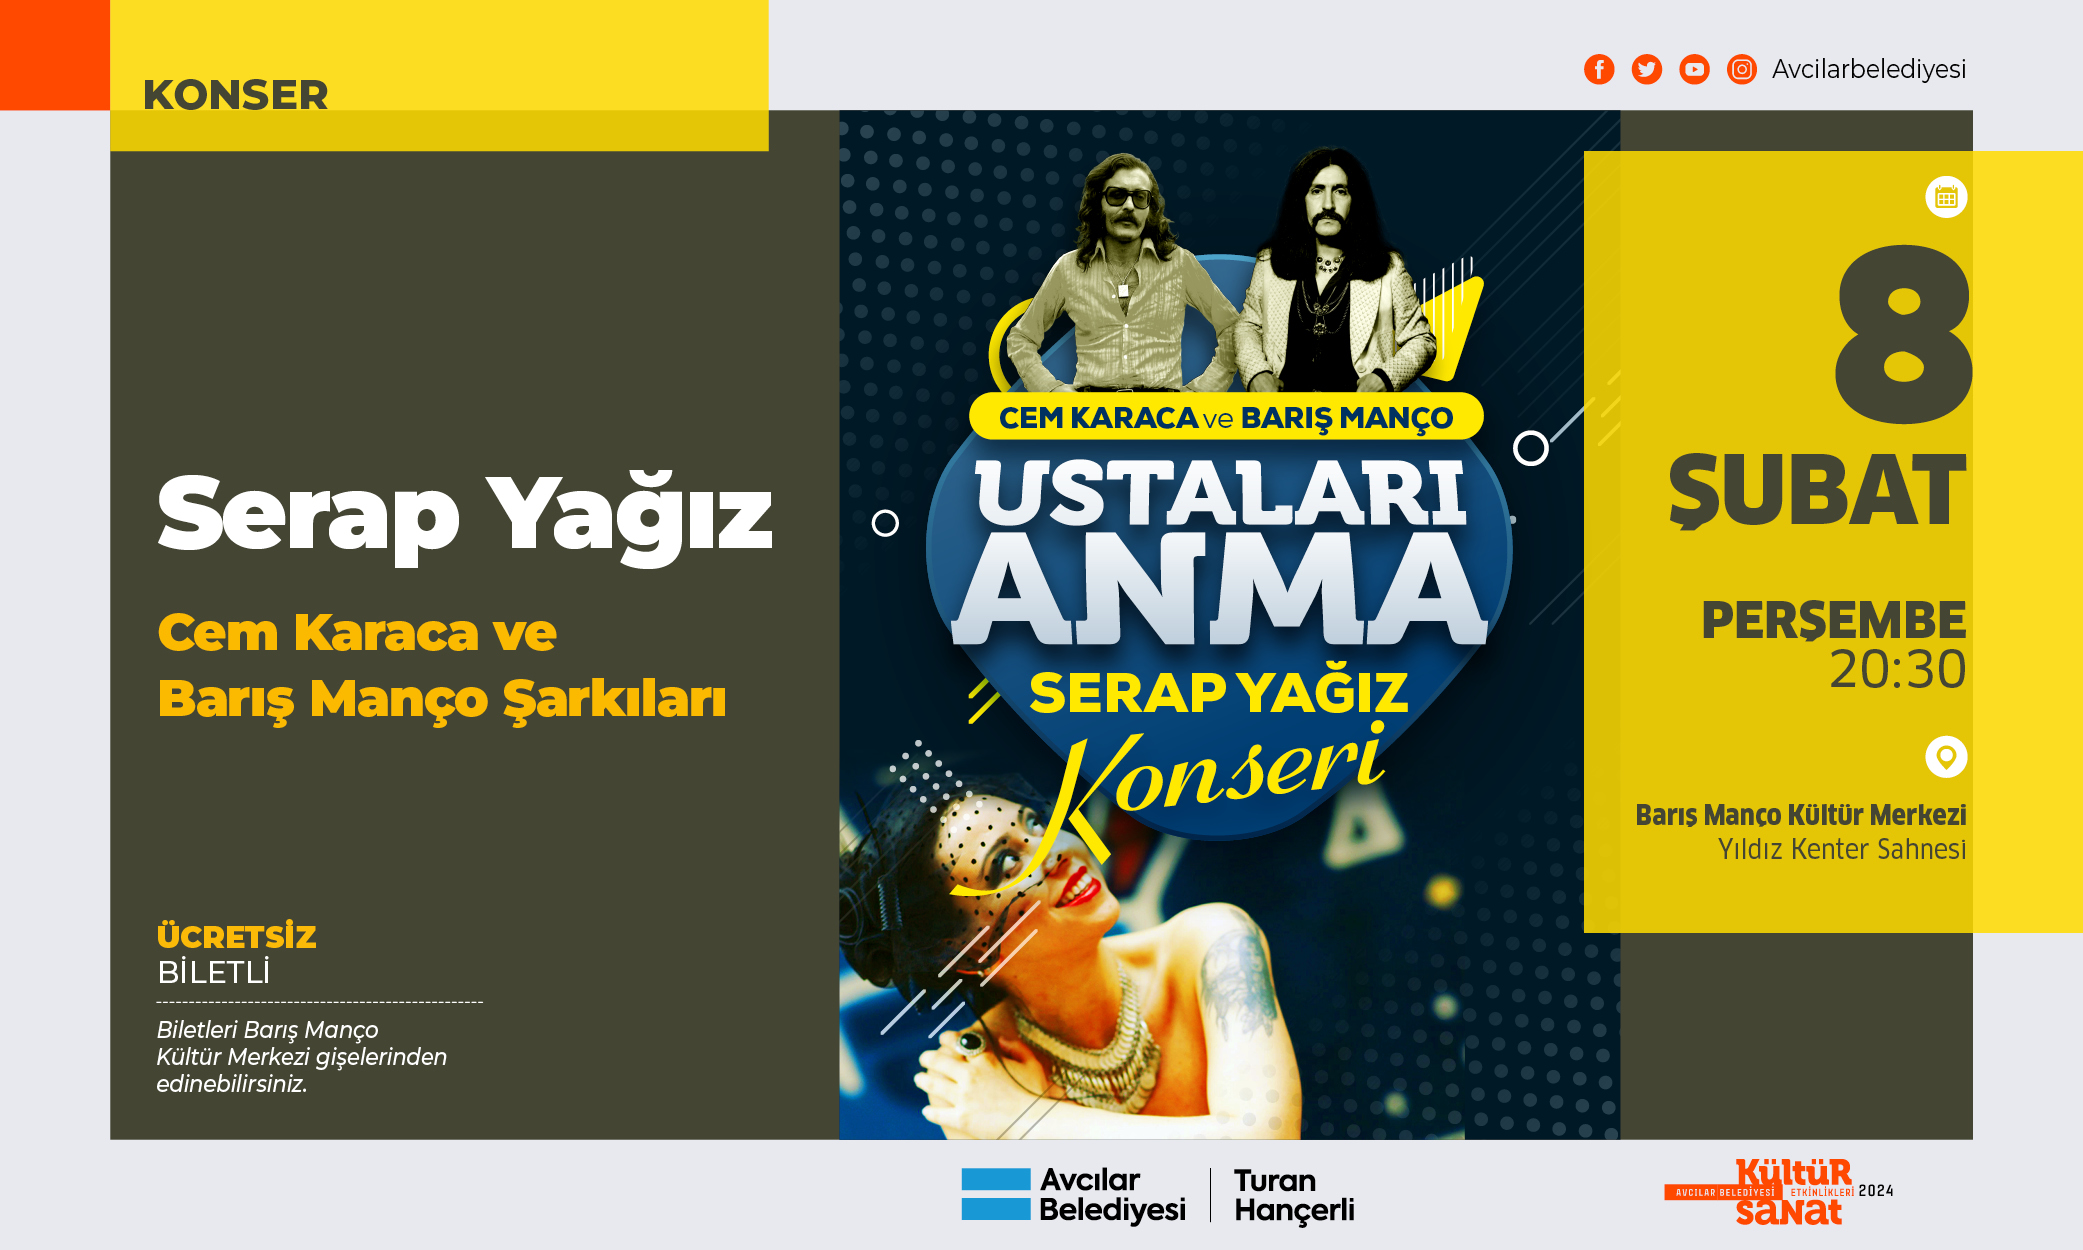 Serap Yağız - Cem Karaca ve Barış Manço Şarkıları (konser)